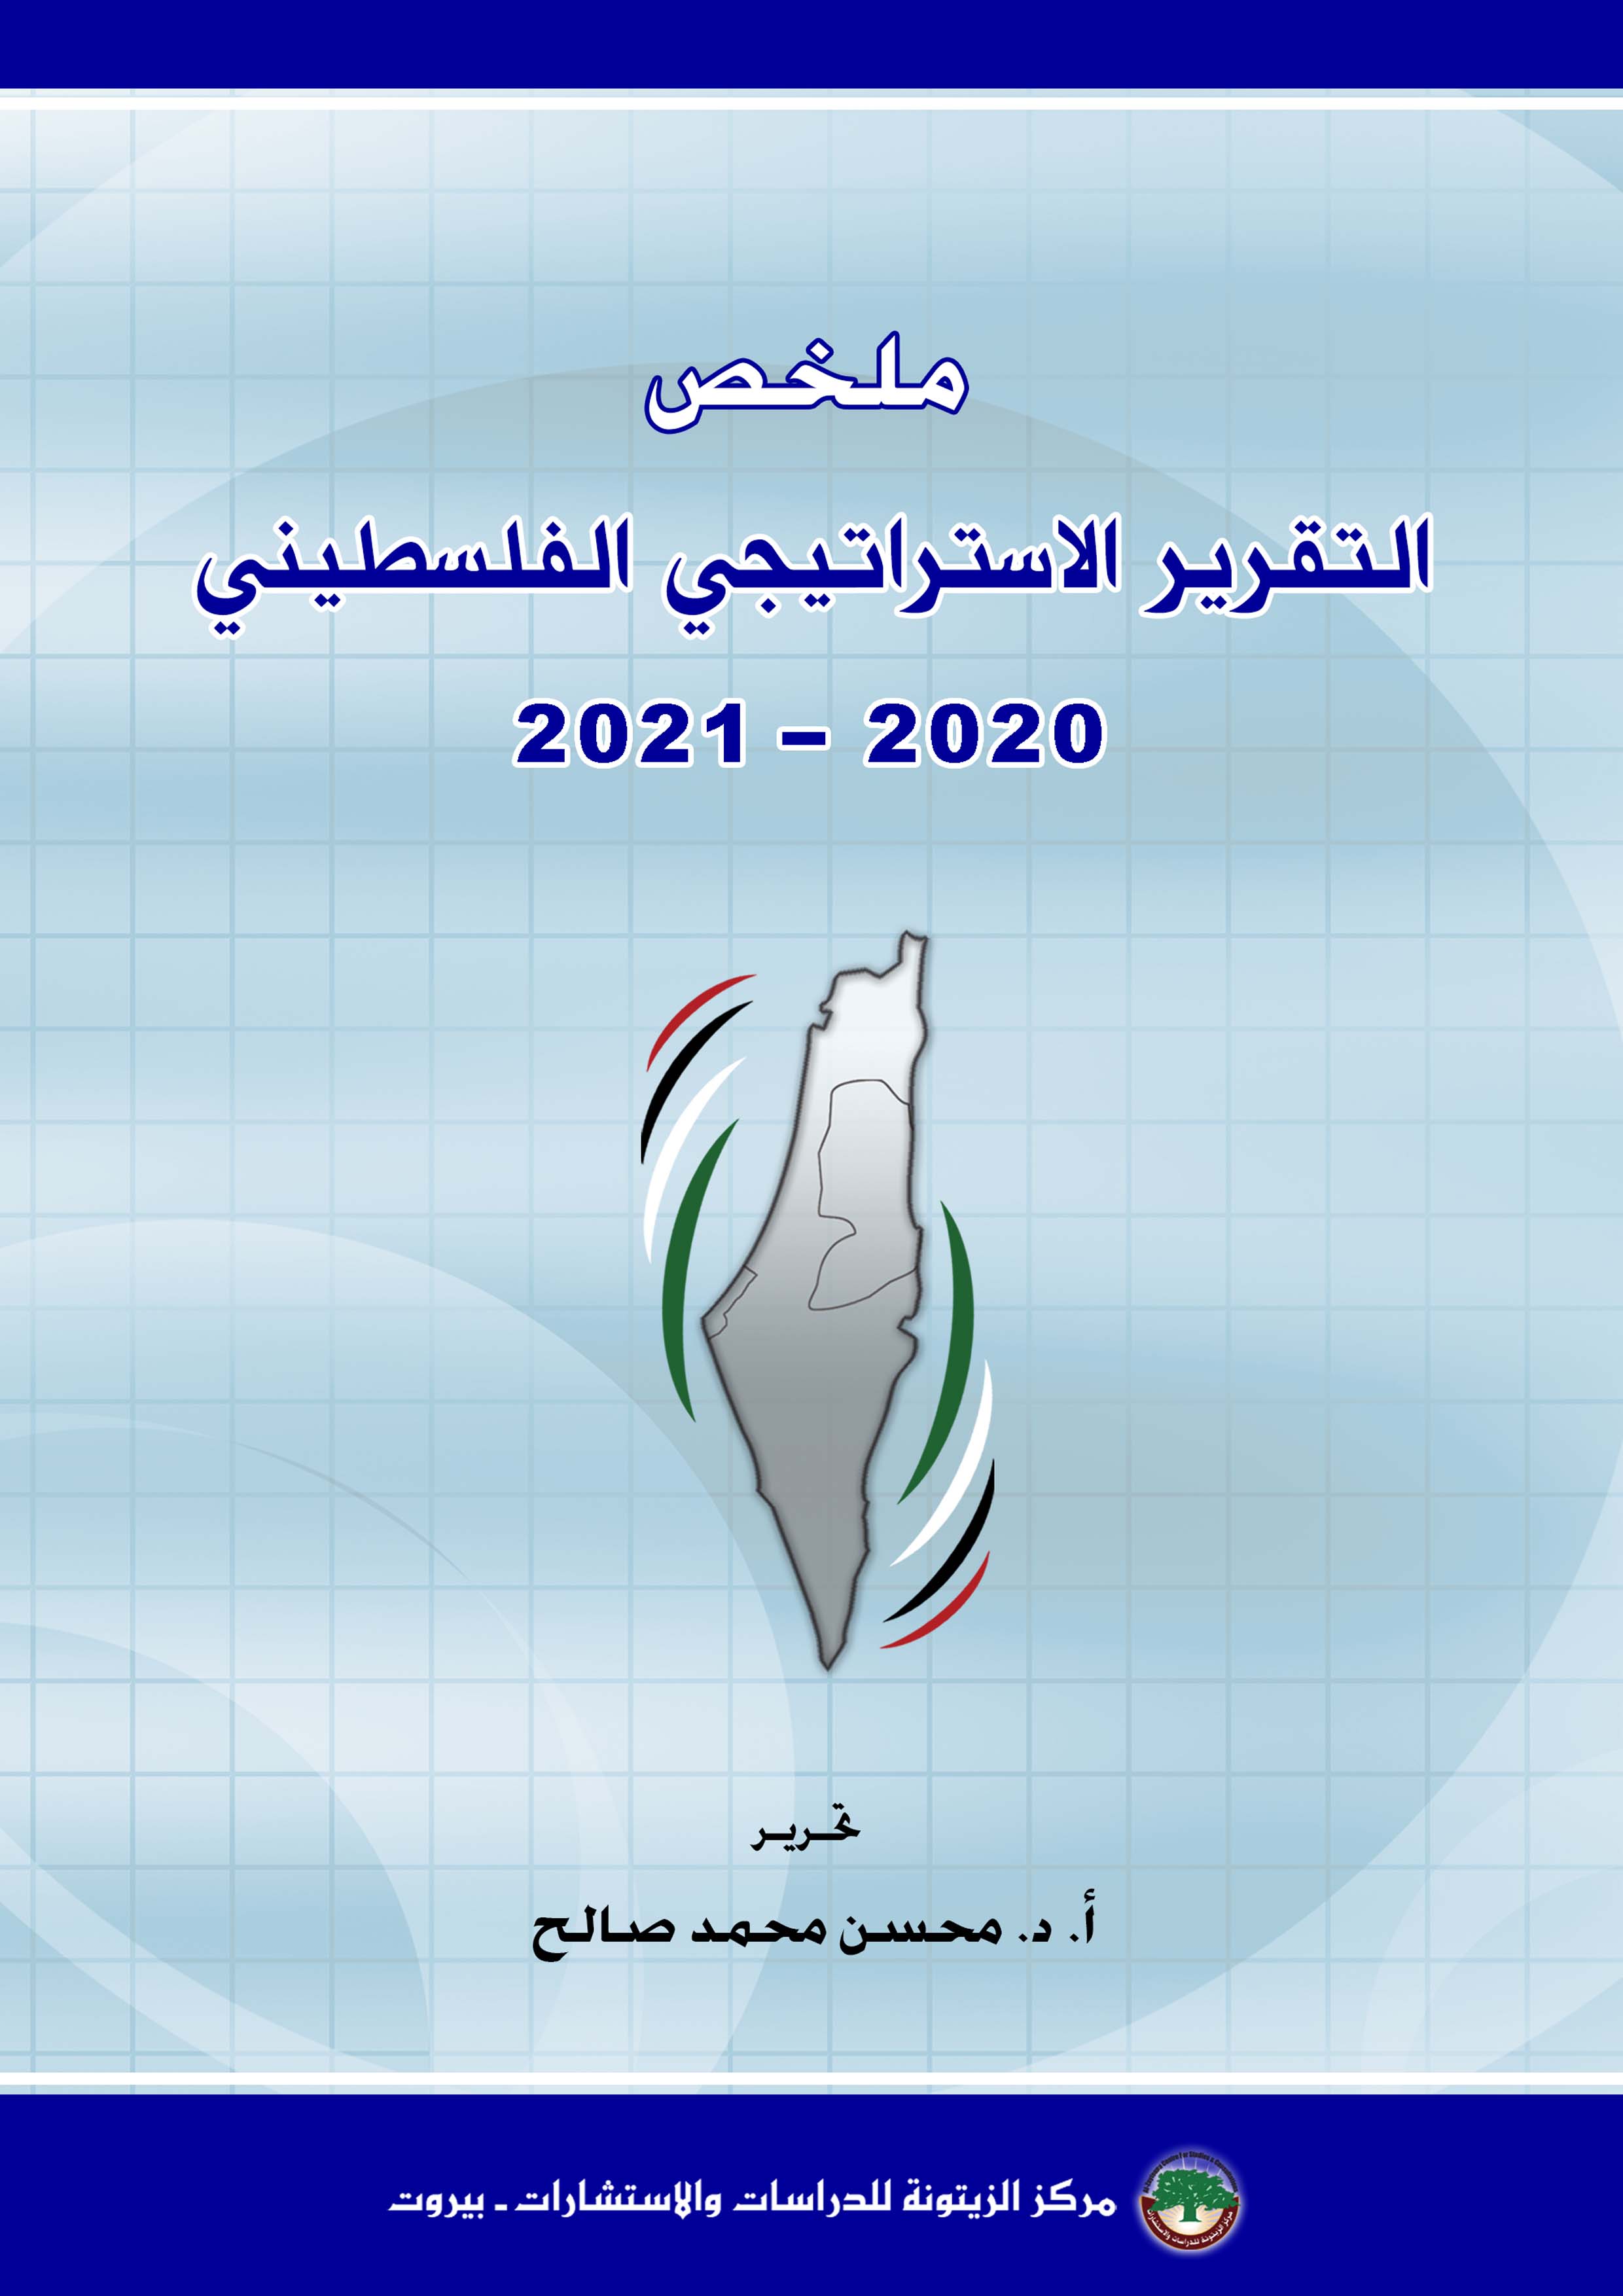 الزيتونة تصدر ملخصا لتقريرها الإستراتيجي لعامي 2021-2022